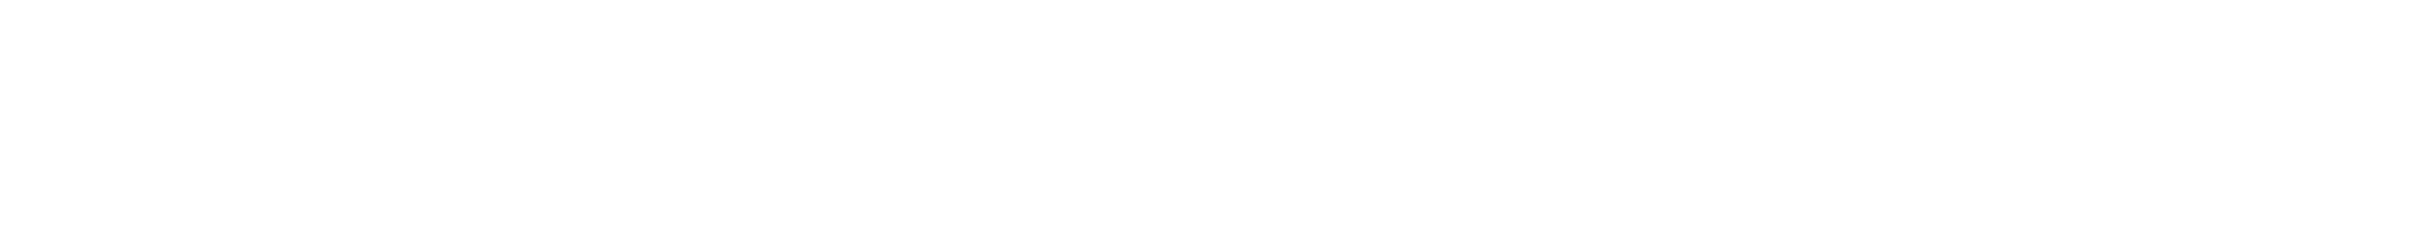 smarsh university logo white